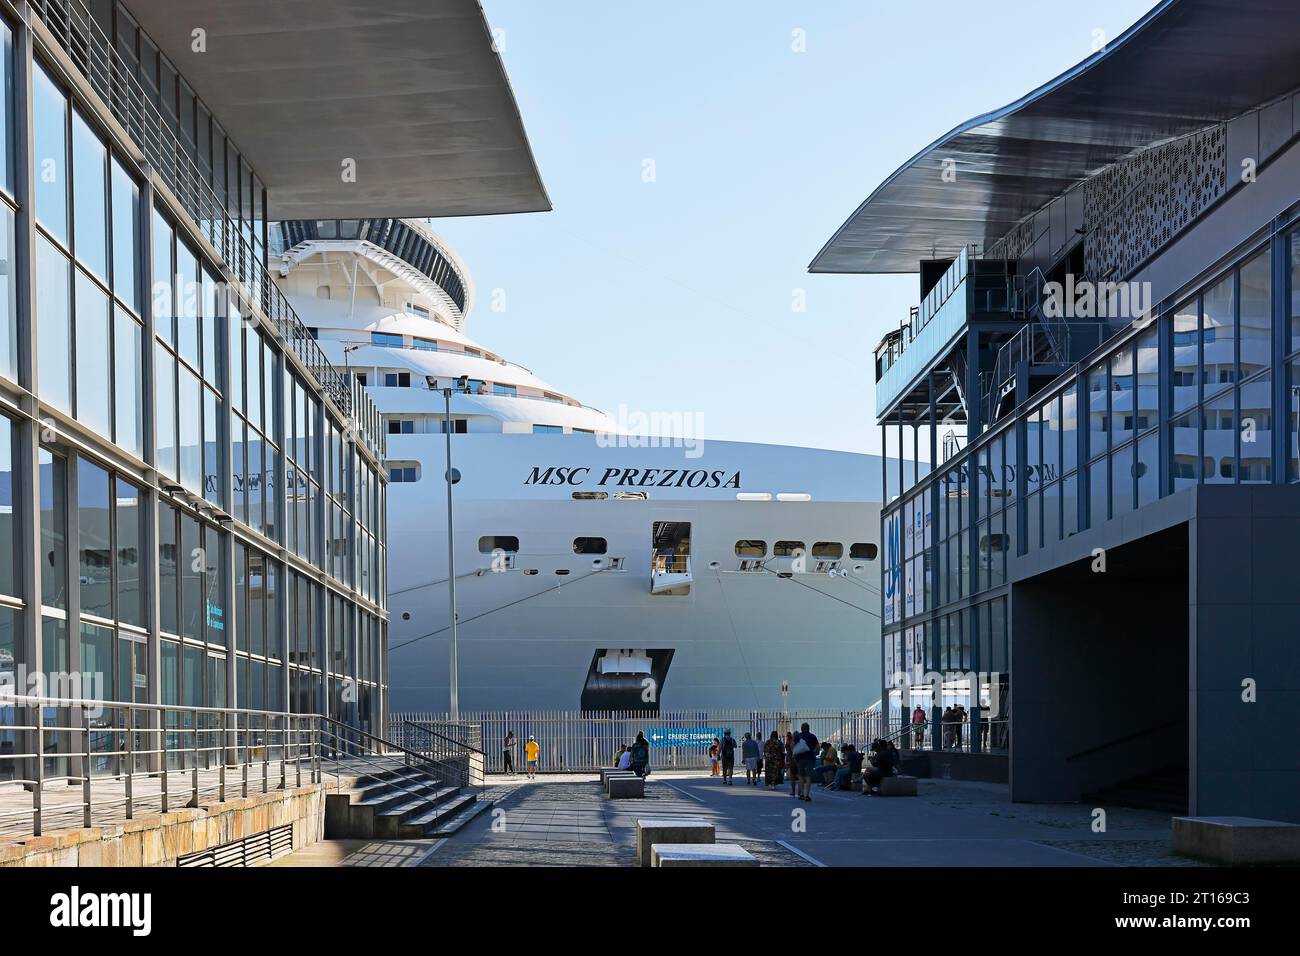 Nave da crociera MSC preziosa presso il terminal delle navi da crociera di la Coruna, Galizia, Spagna Foto Stock